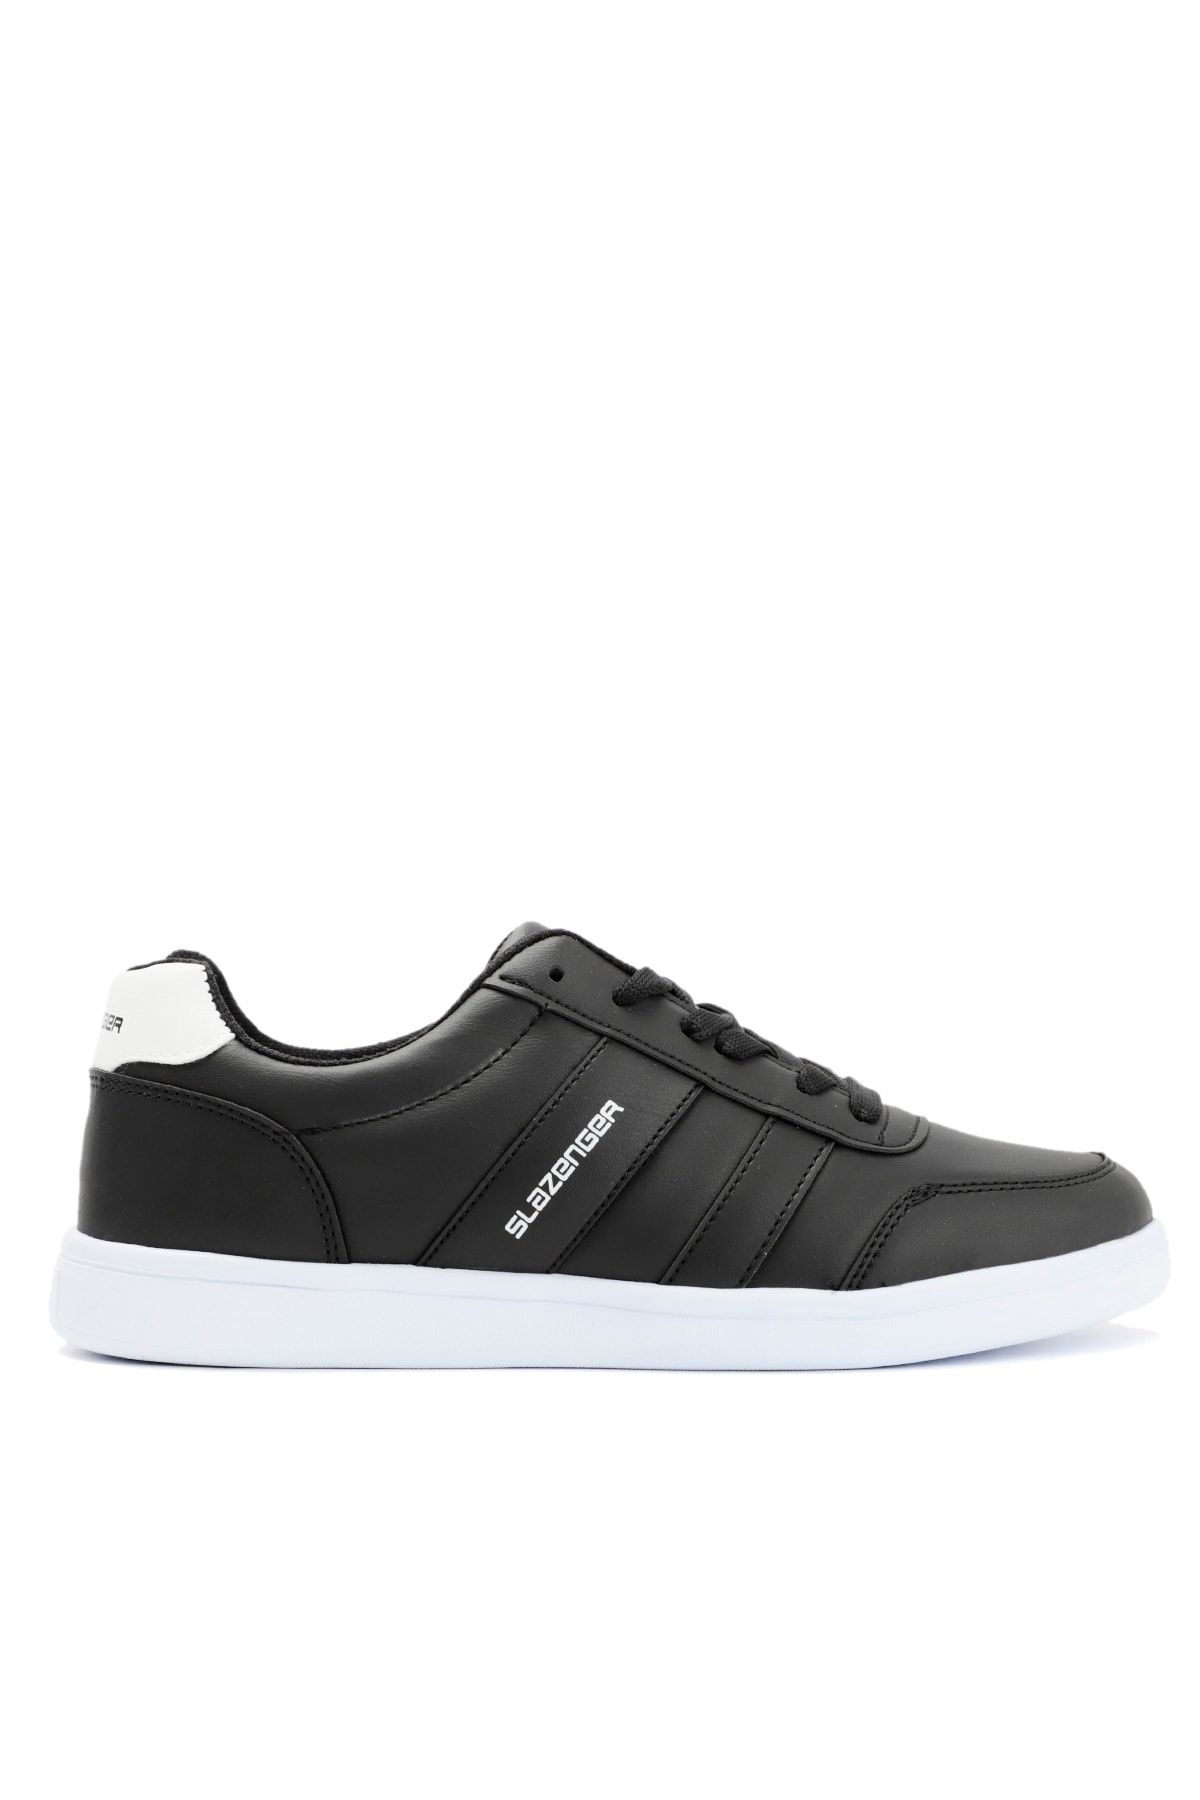 Slazenger Daısy I Sneaker Ayakkabı Siyah / Beyaz